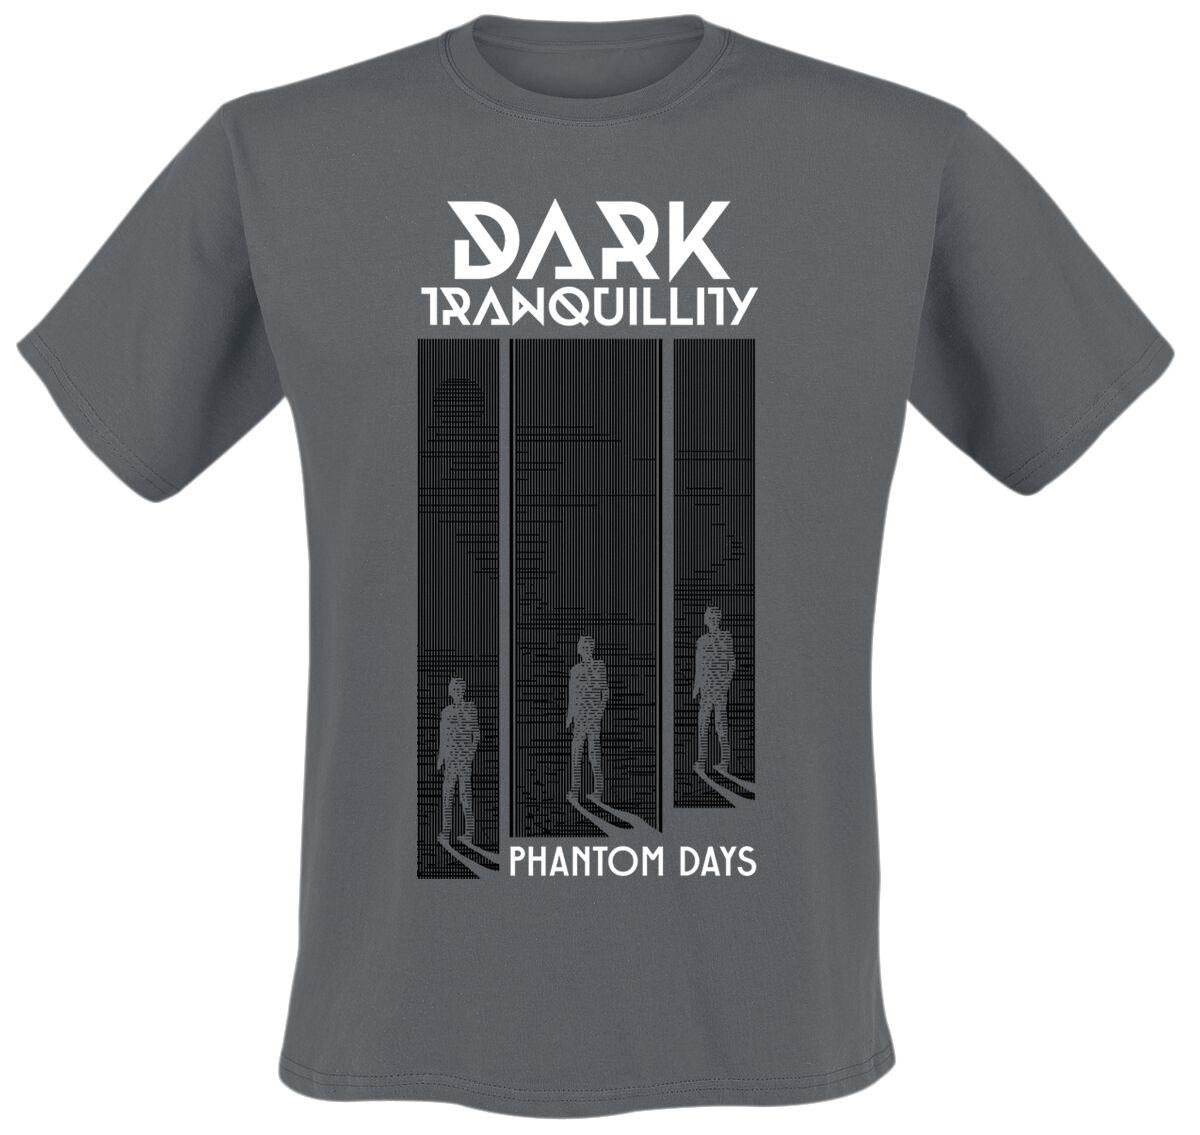 Dark Tranquillity T-Shirt - Phantom Days - S bis XXL - für Männer - Größe XL - dunkelgrau  - EMP exklusives Merchandise!